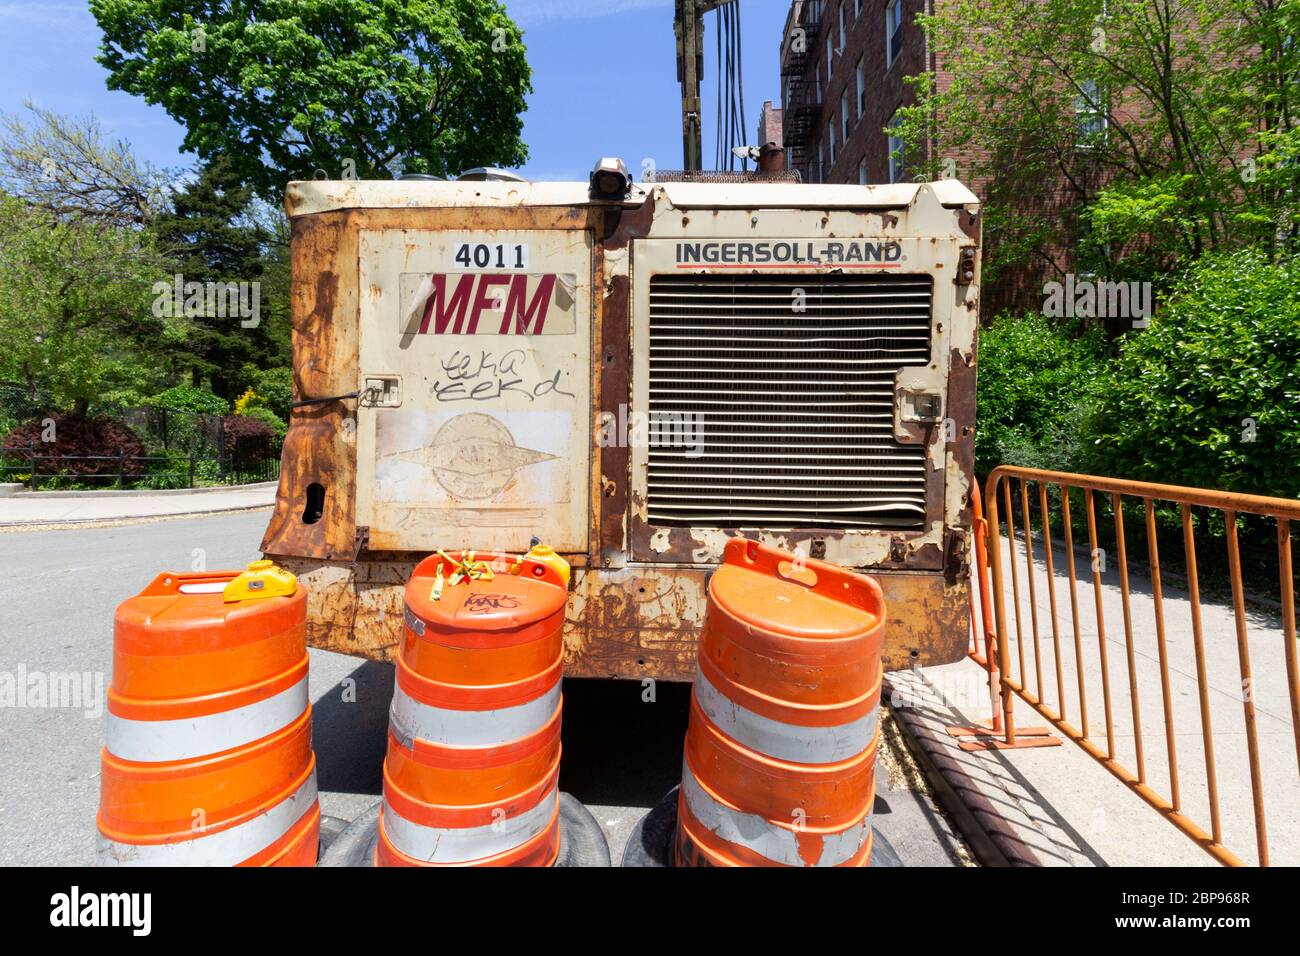 Il retro di un bulldozer industriale di Ingersoll Rand o Trane Technologies, con il marchio in mostra, parcheggiato su una strada di New york Foto Stock